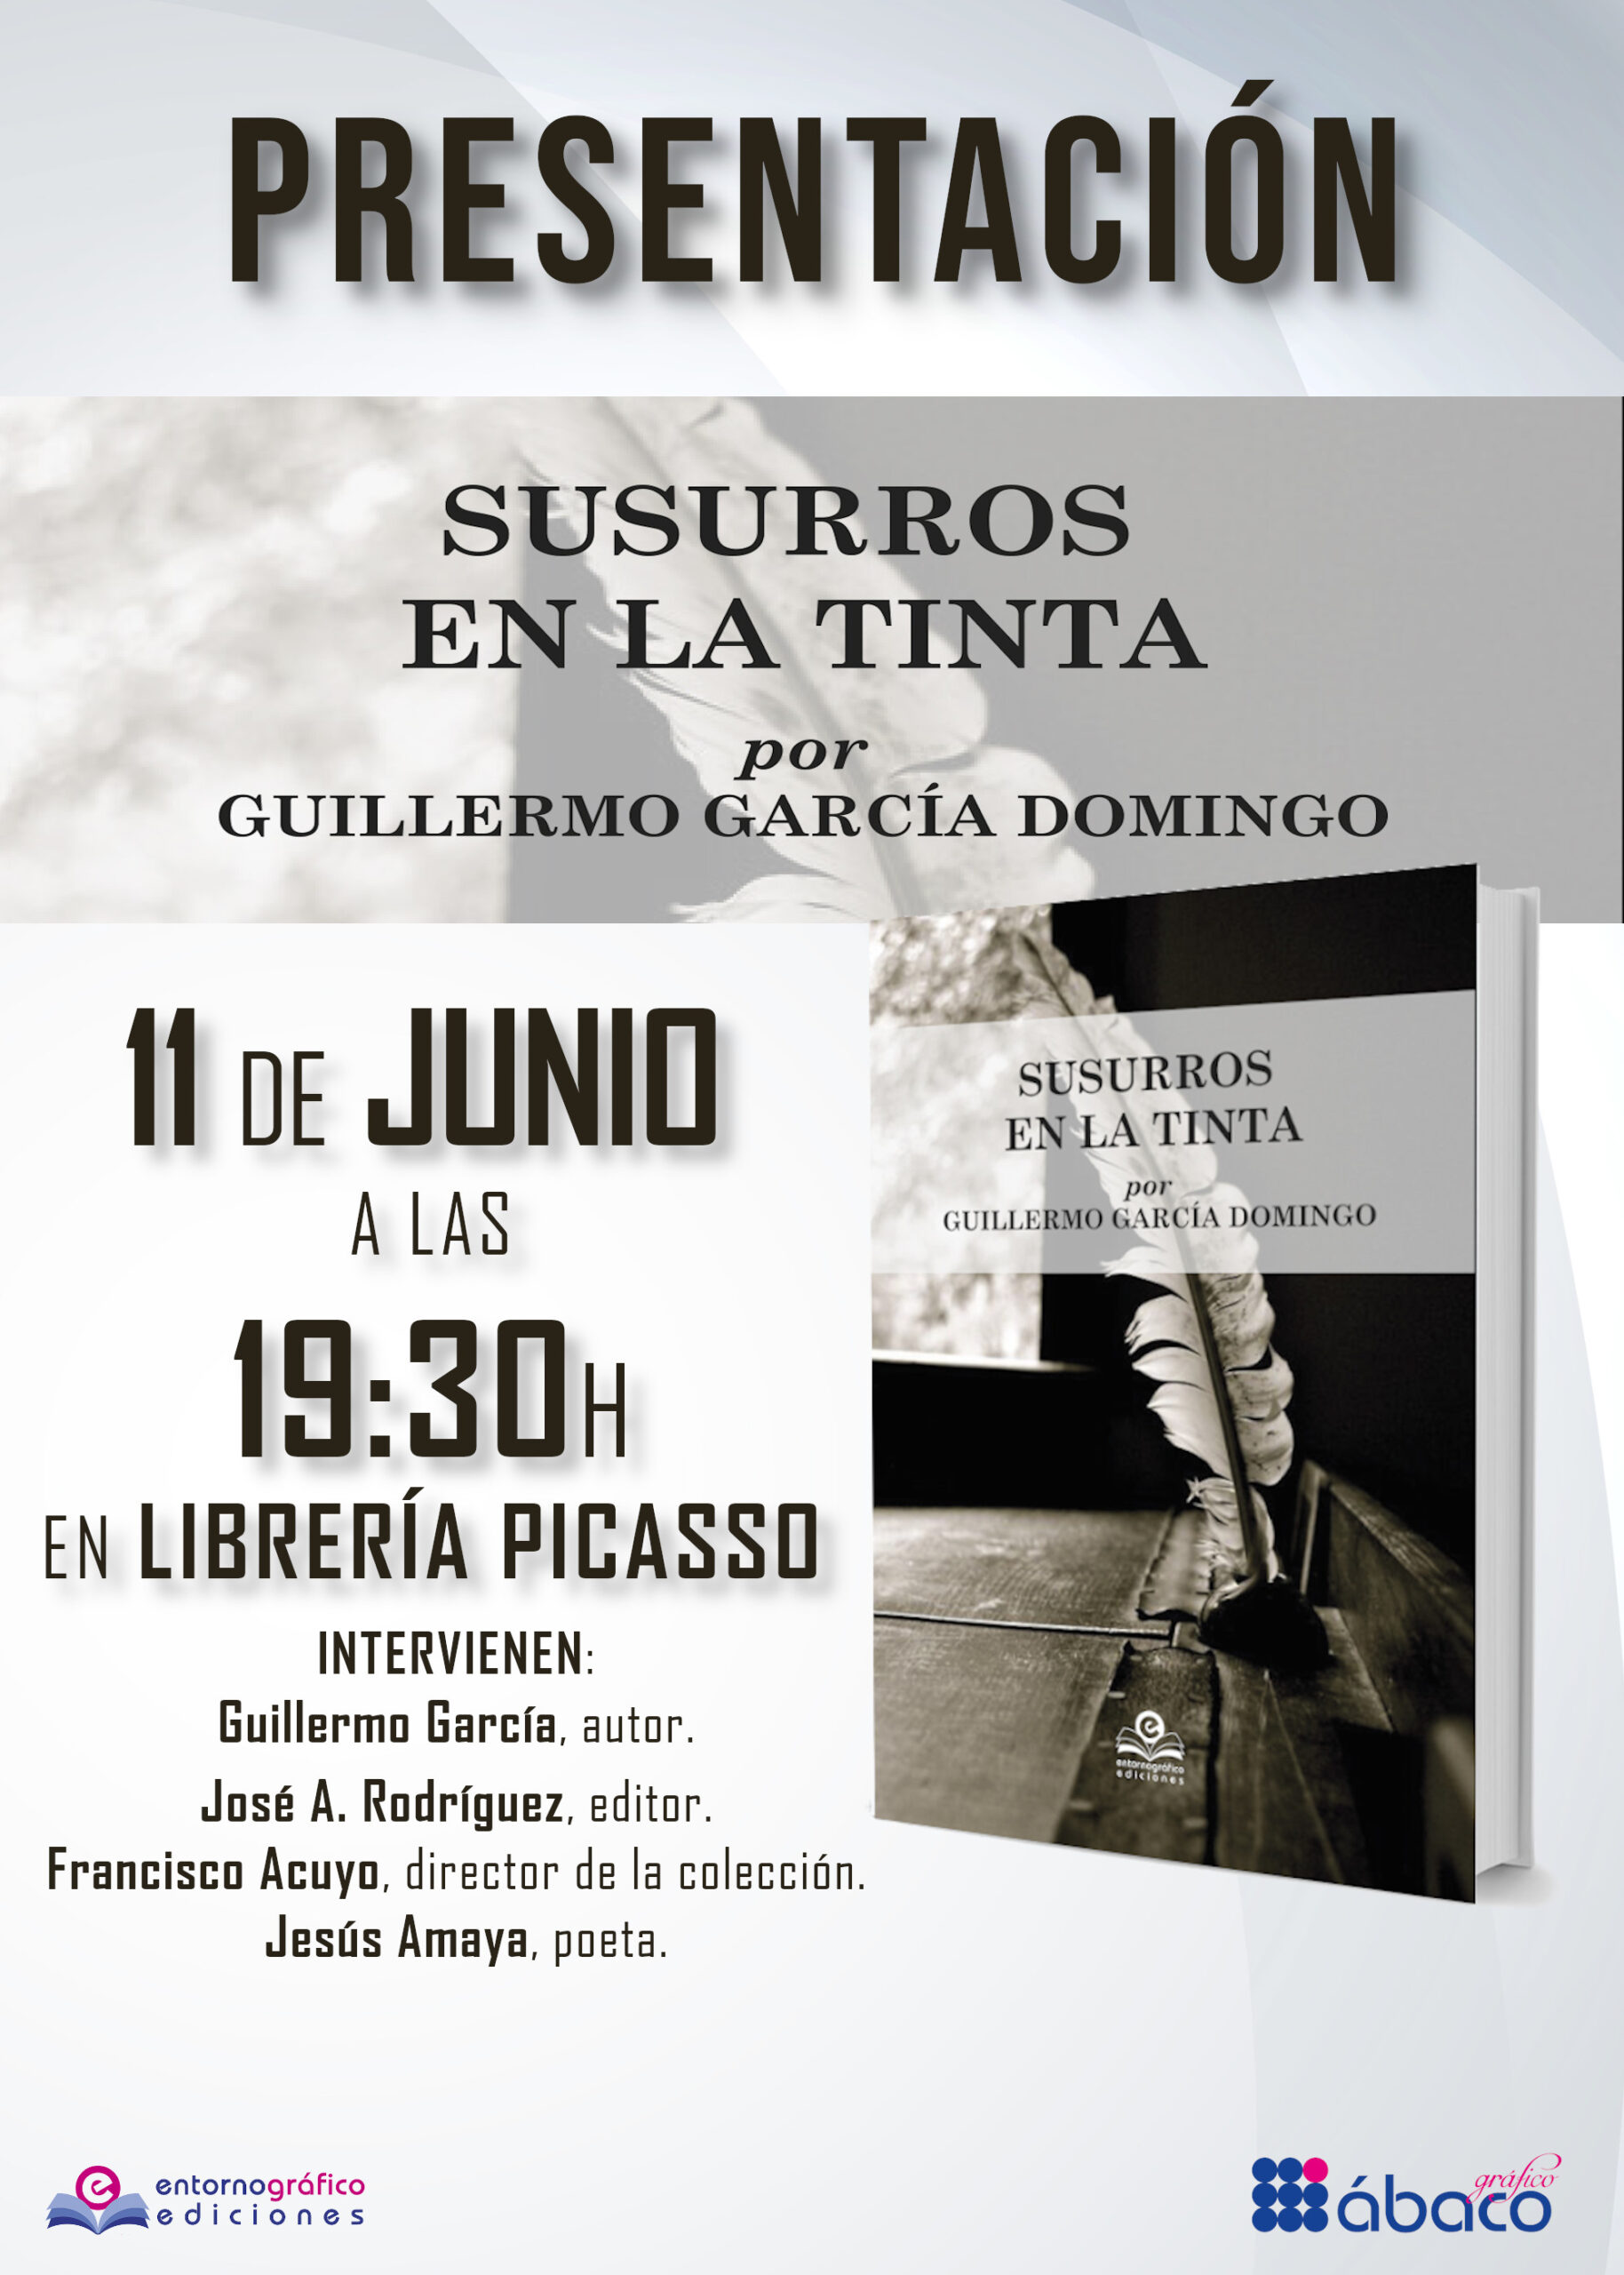 Presentación del libro “Susurros en la tinta”, de Guillermo García Domingo